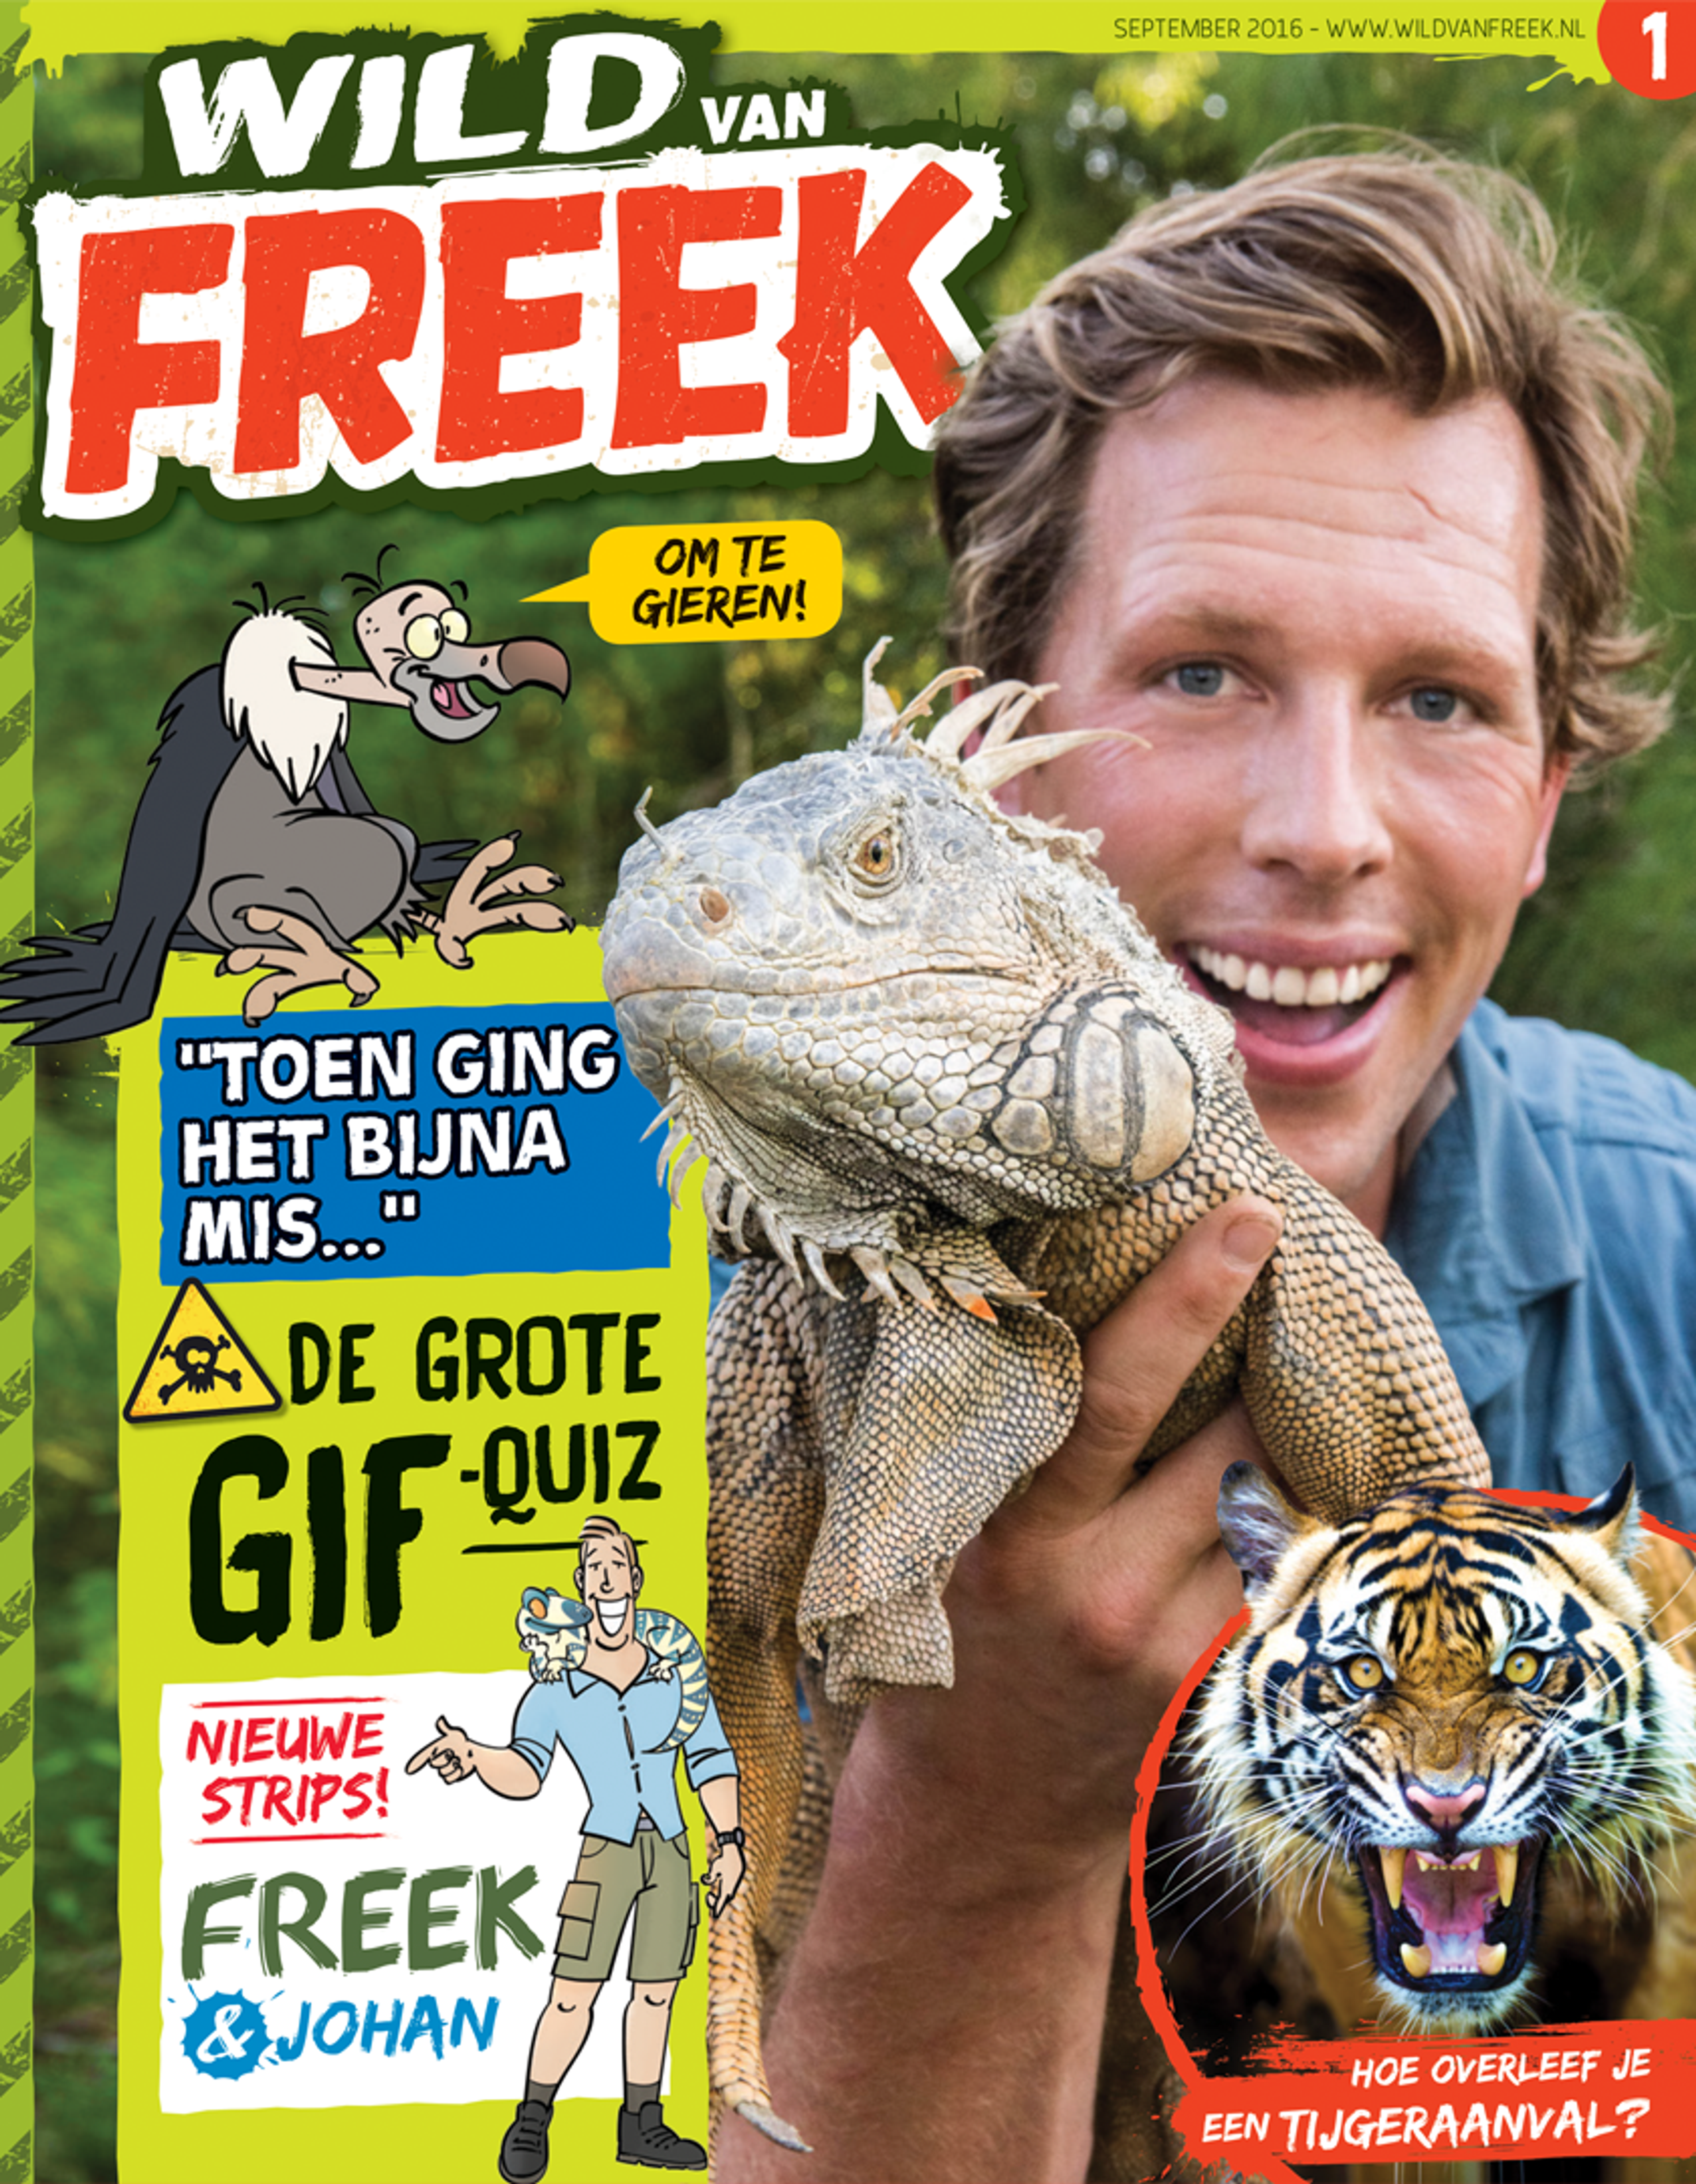 Bioloog Freek Vonk krijgt eigen kindertijdschrift: Wild van Freek